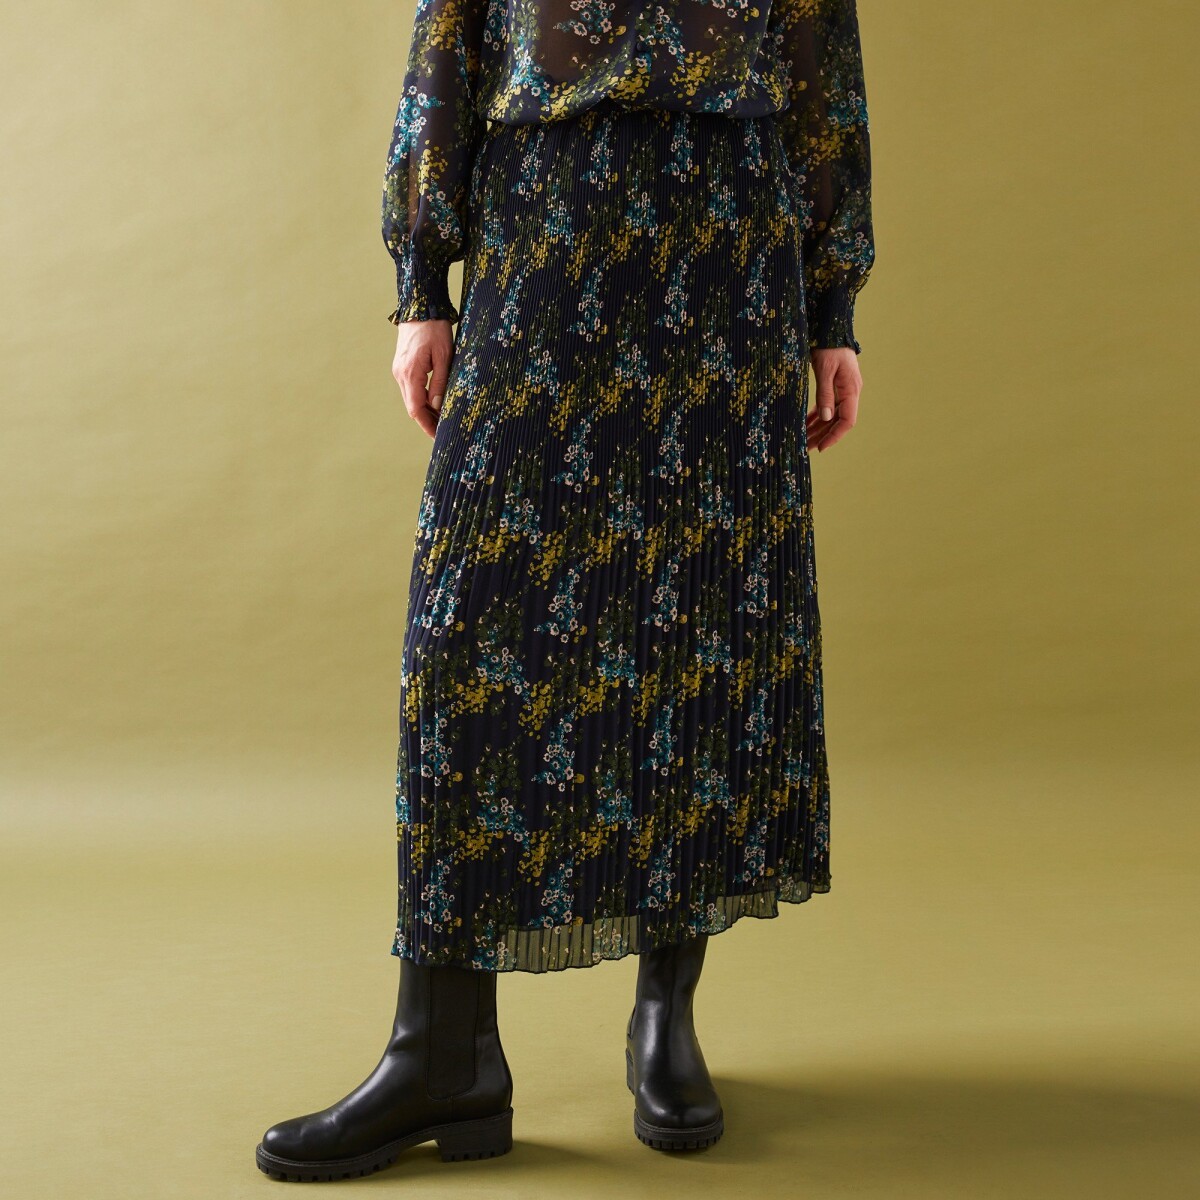 Blancheporte Plisovaná sukně s potiskem květin z recyklovaného polyesteru (1), pro malou post nám.modrá/khaki 42